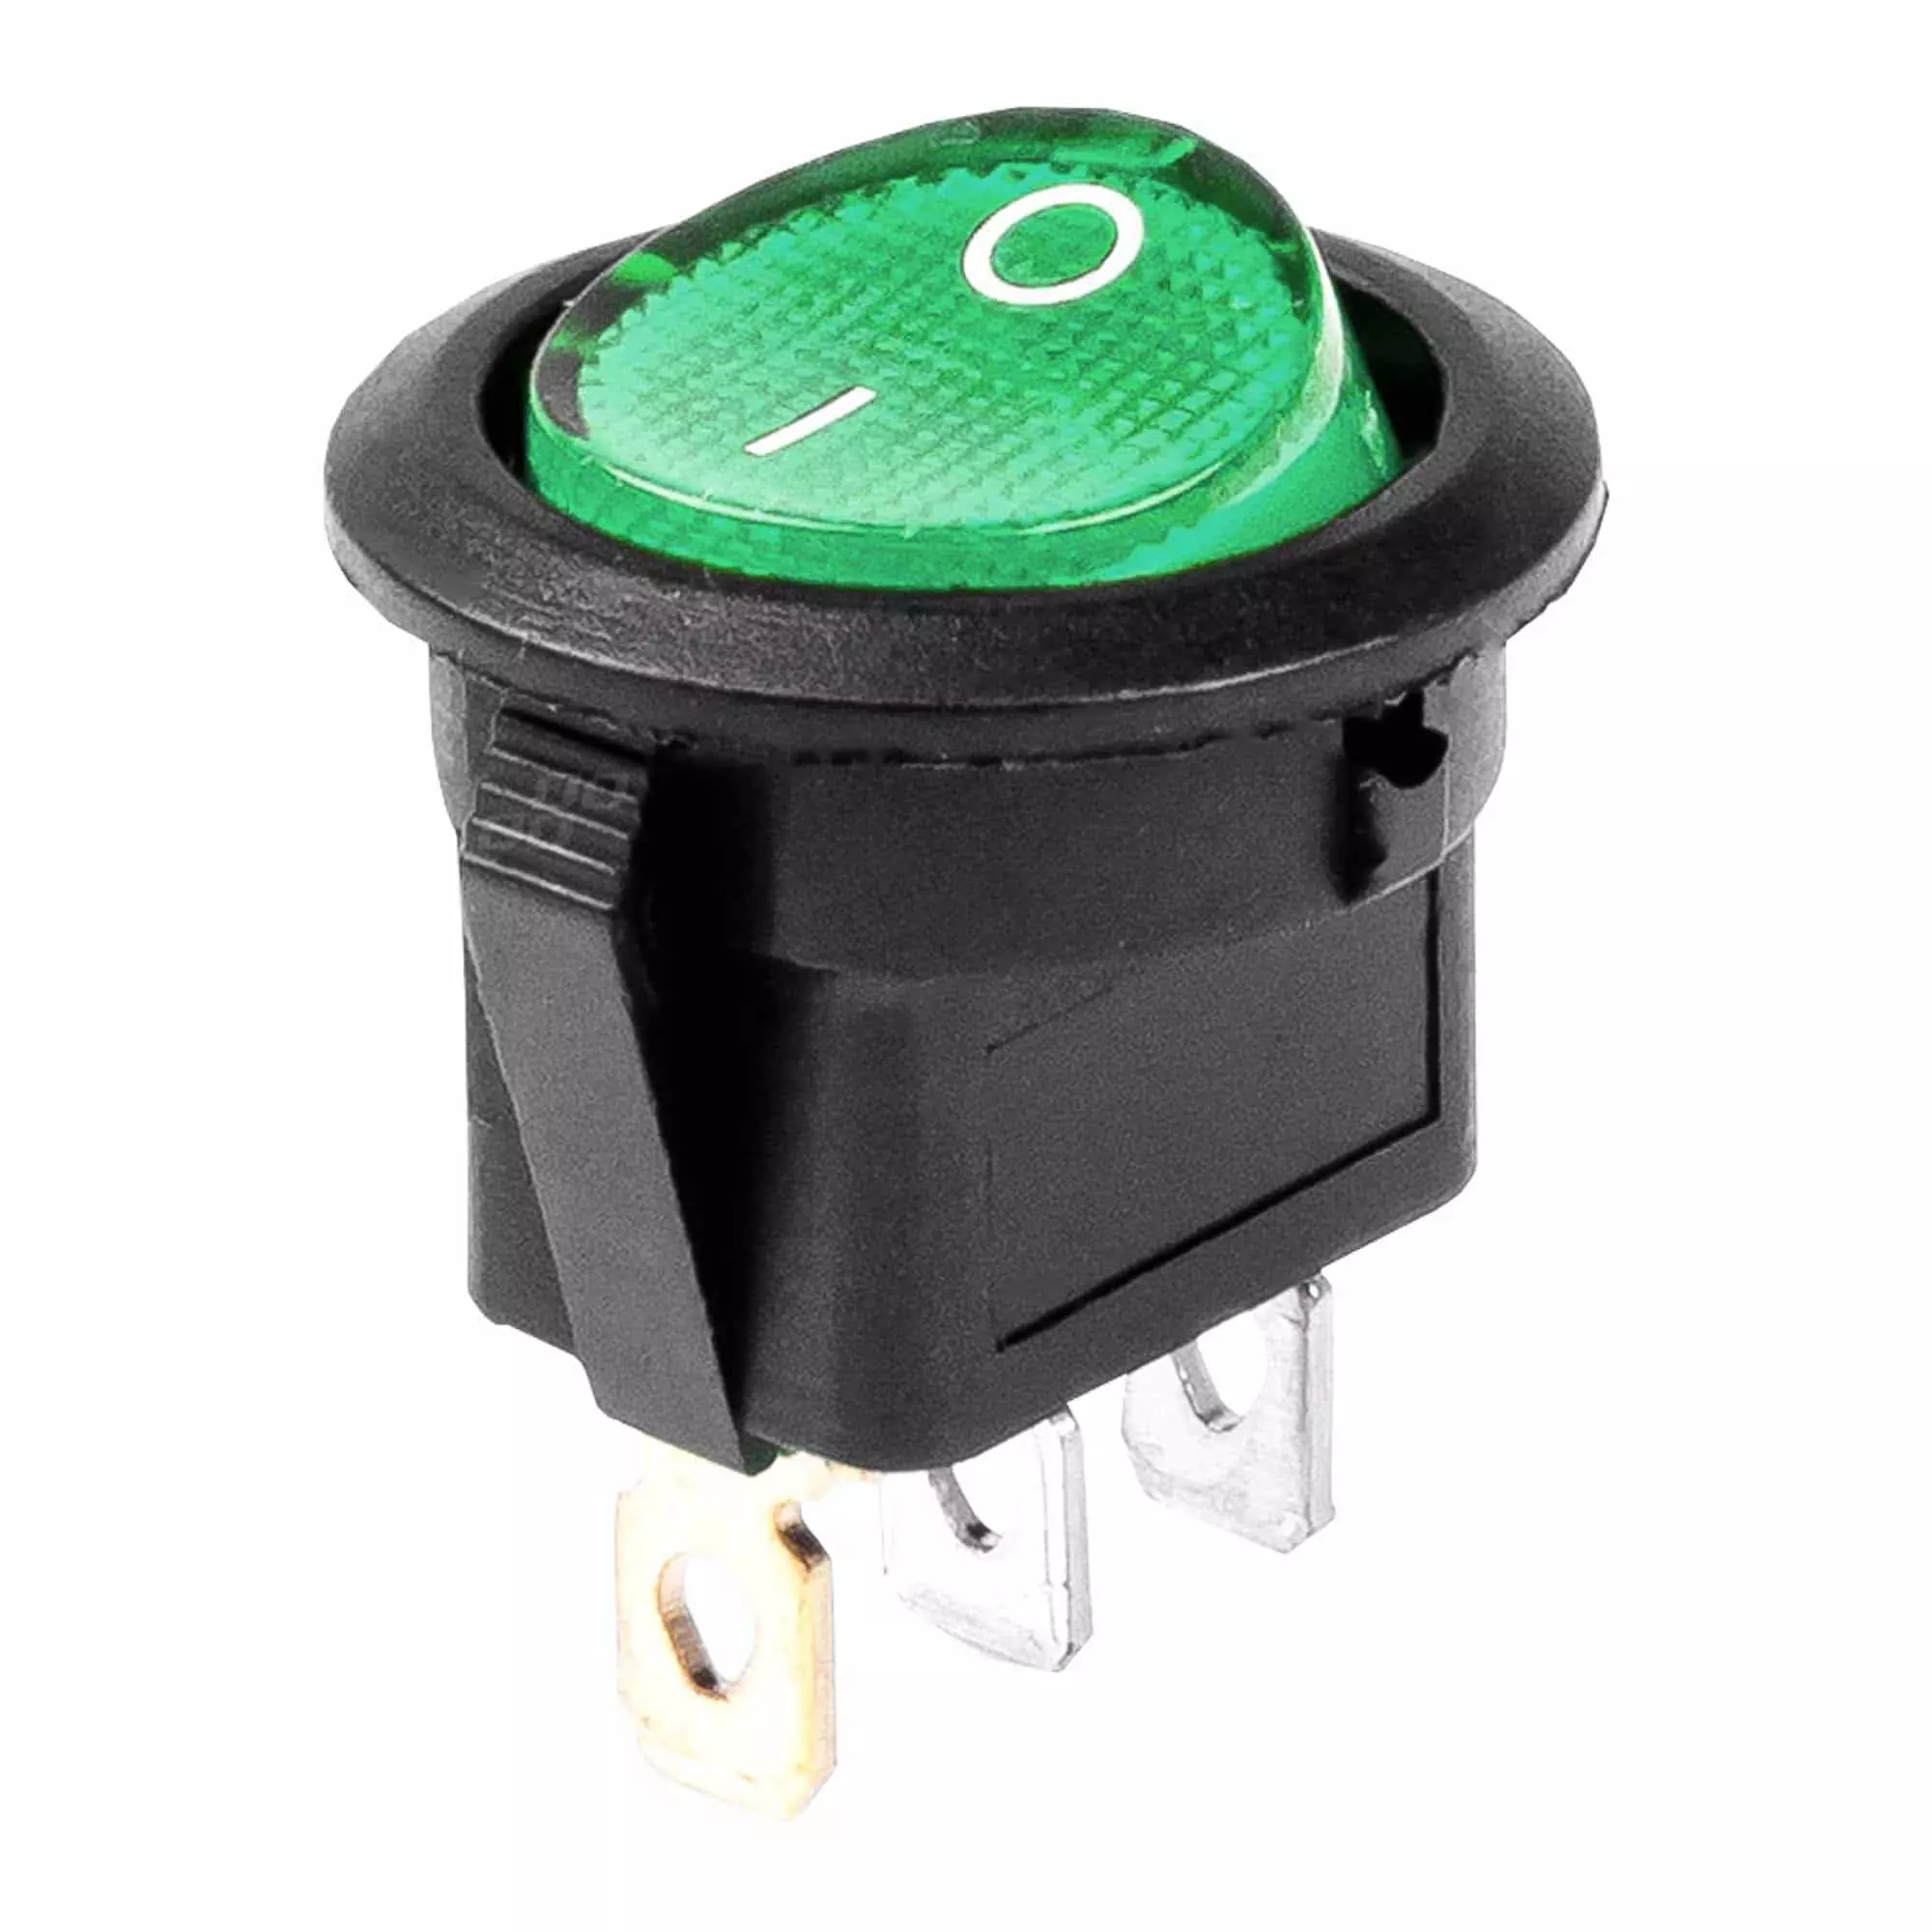 Выключатель круглый Amio с зеленой подсветкой (03084) (030844)